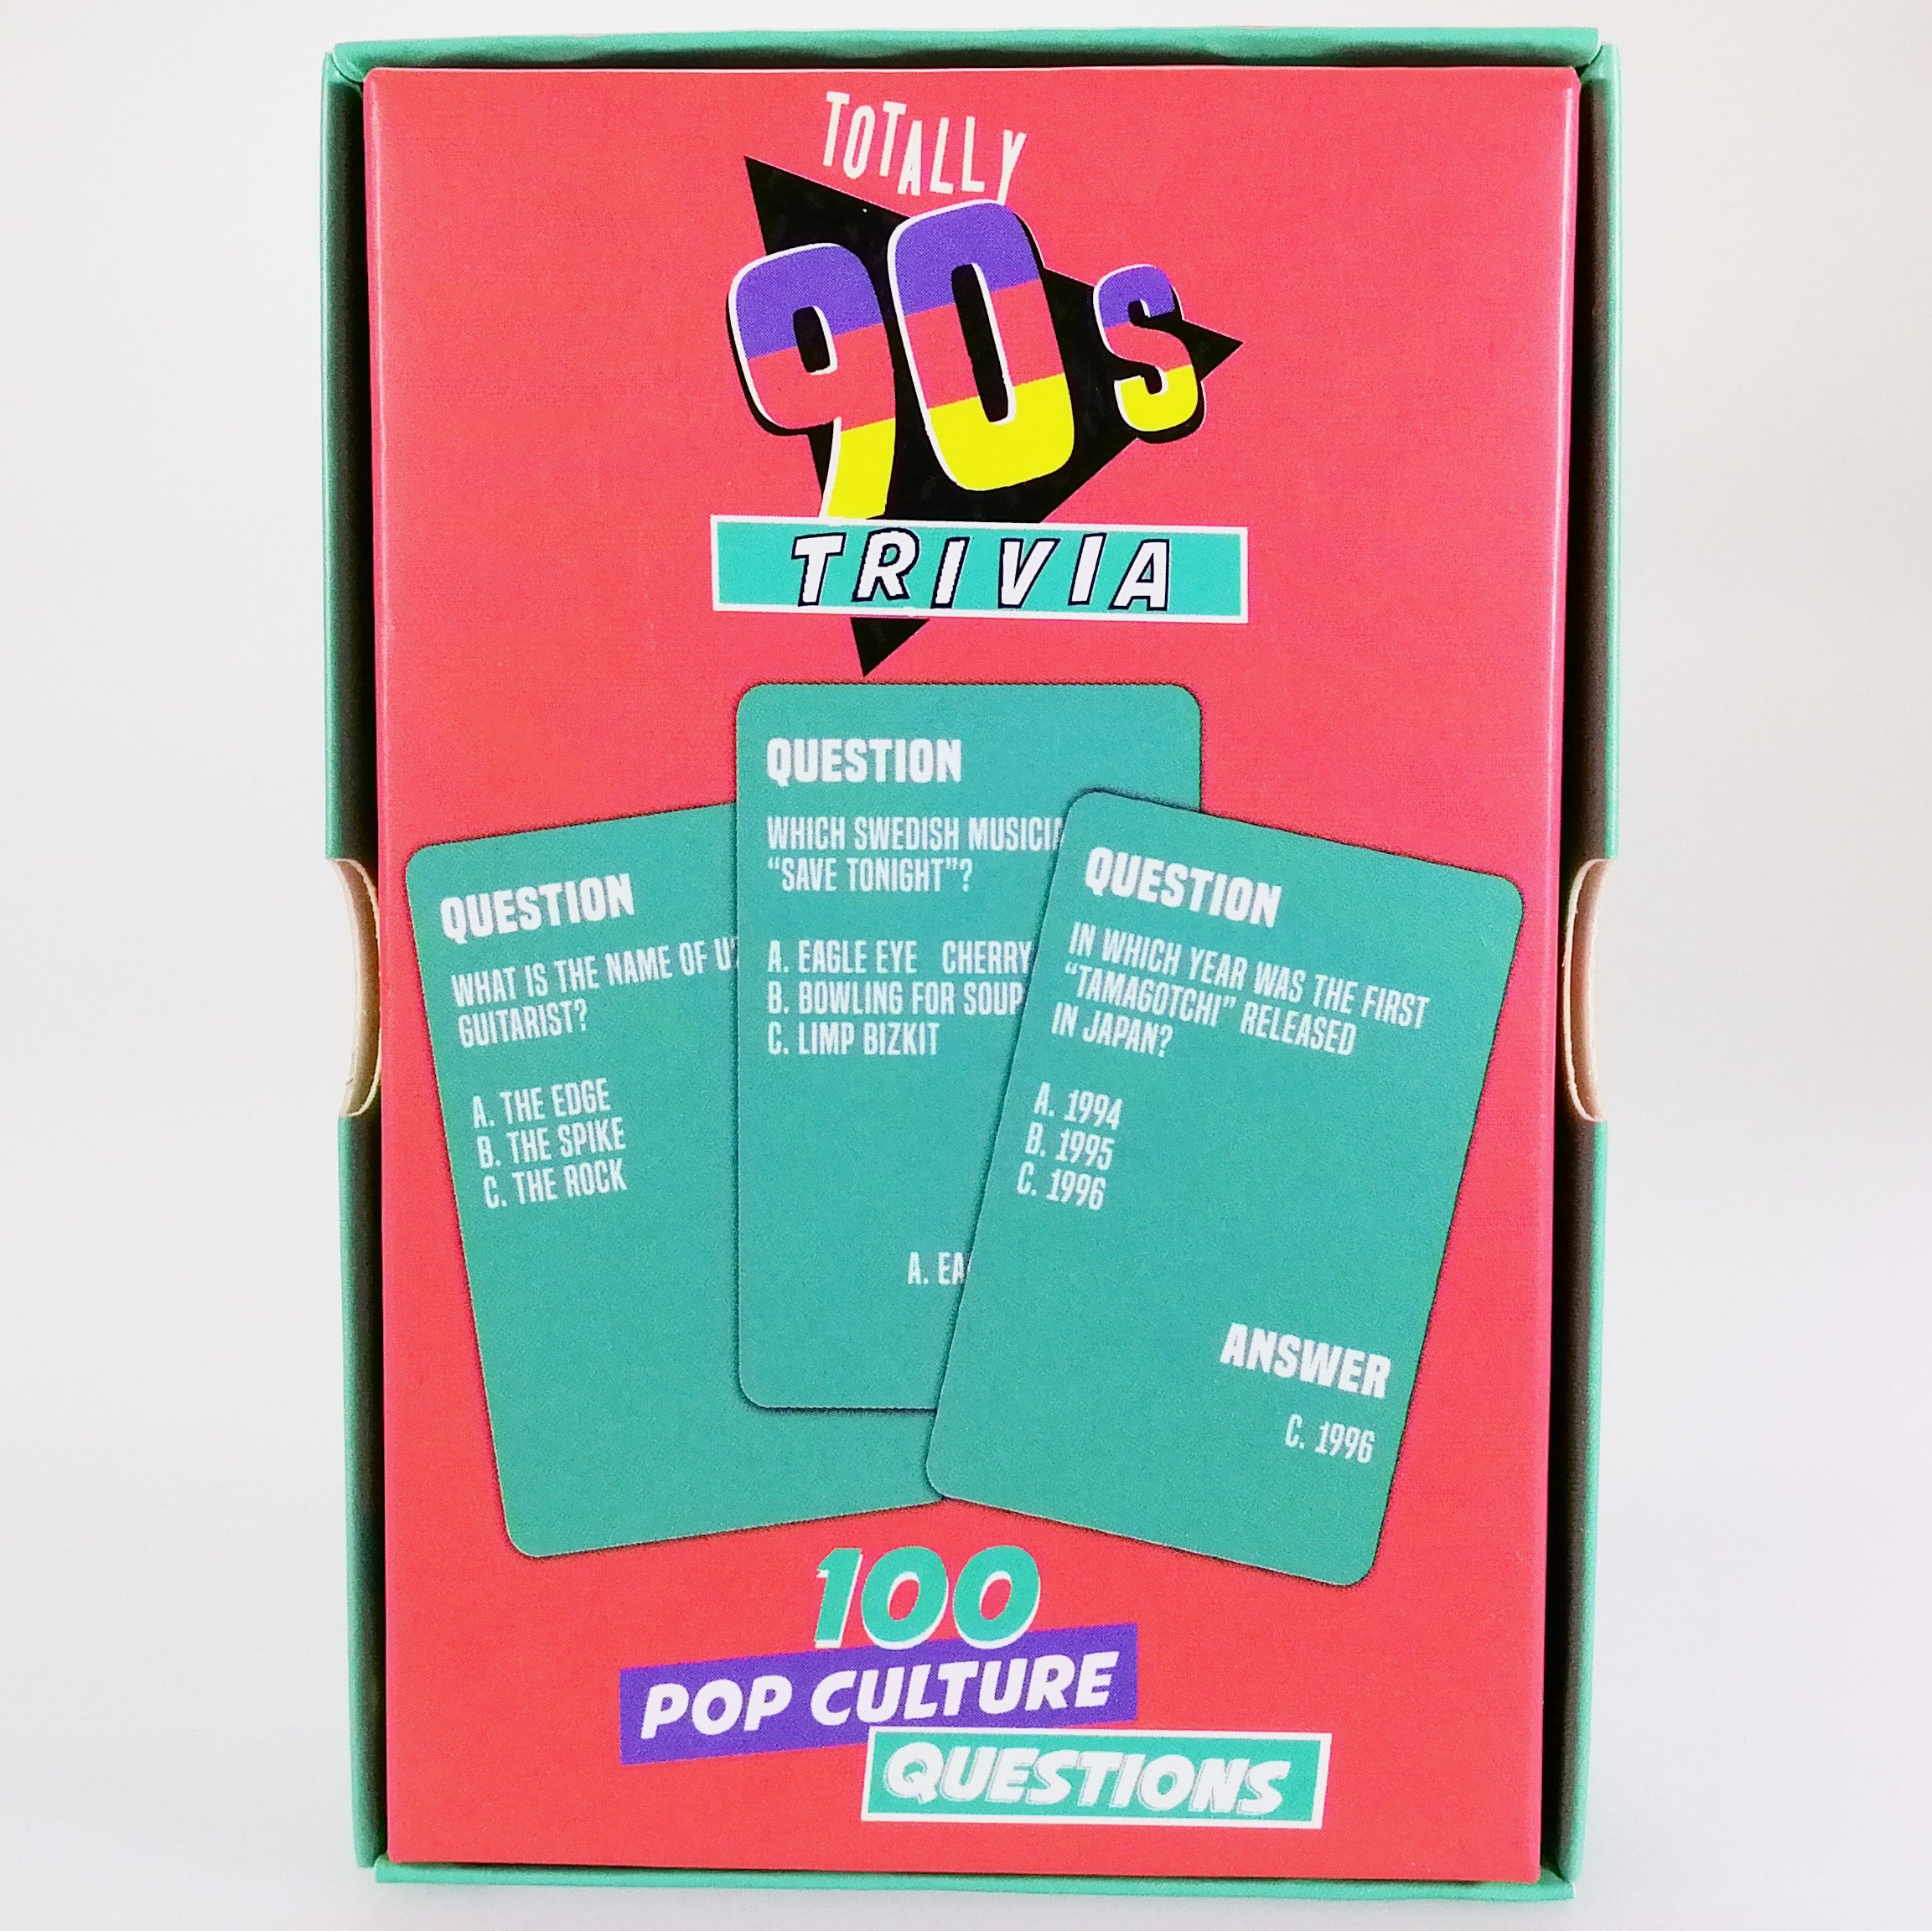 90s Trivia Pop Culture Questions Cards